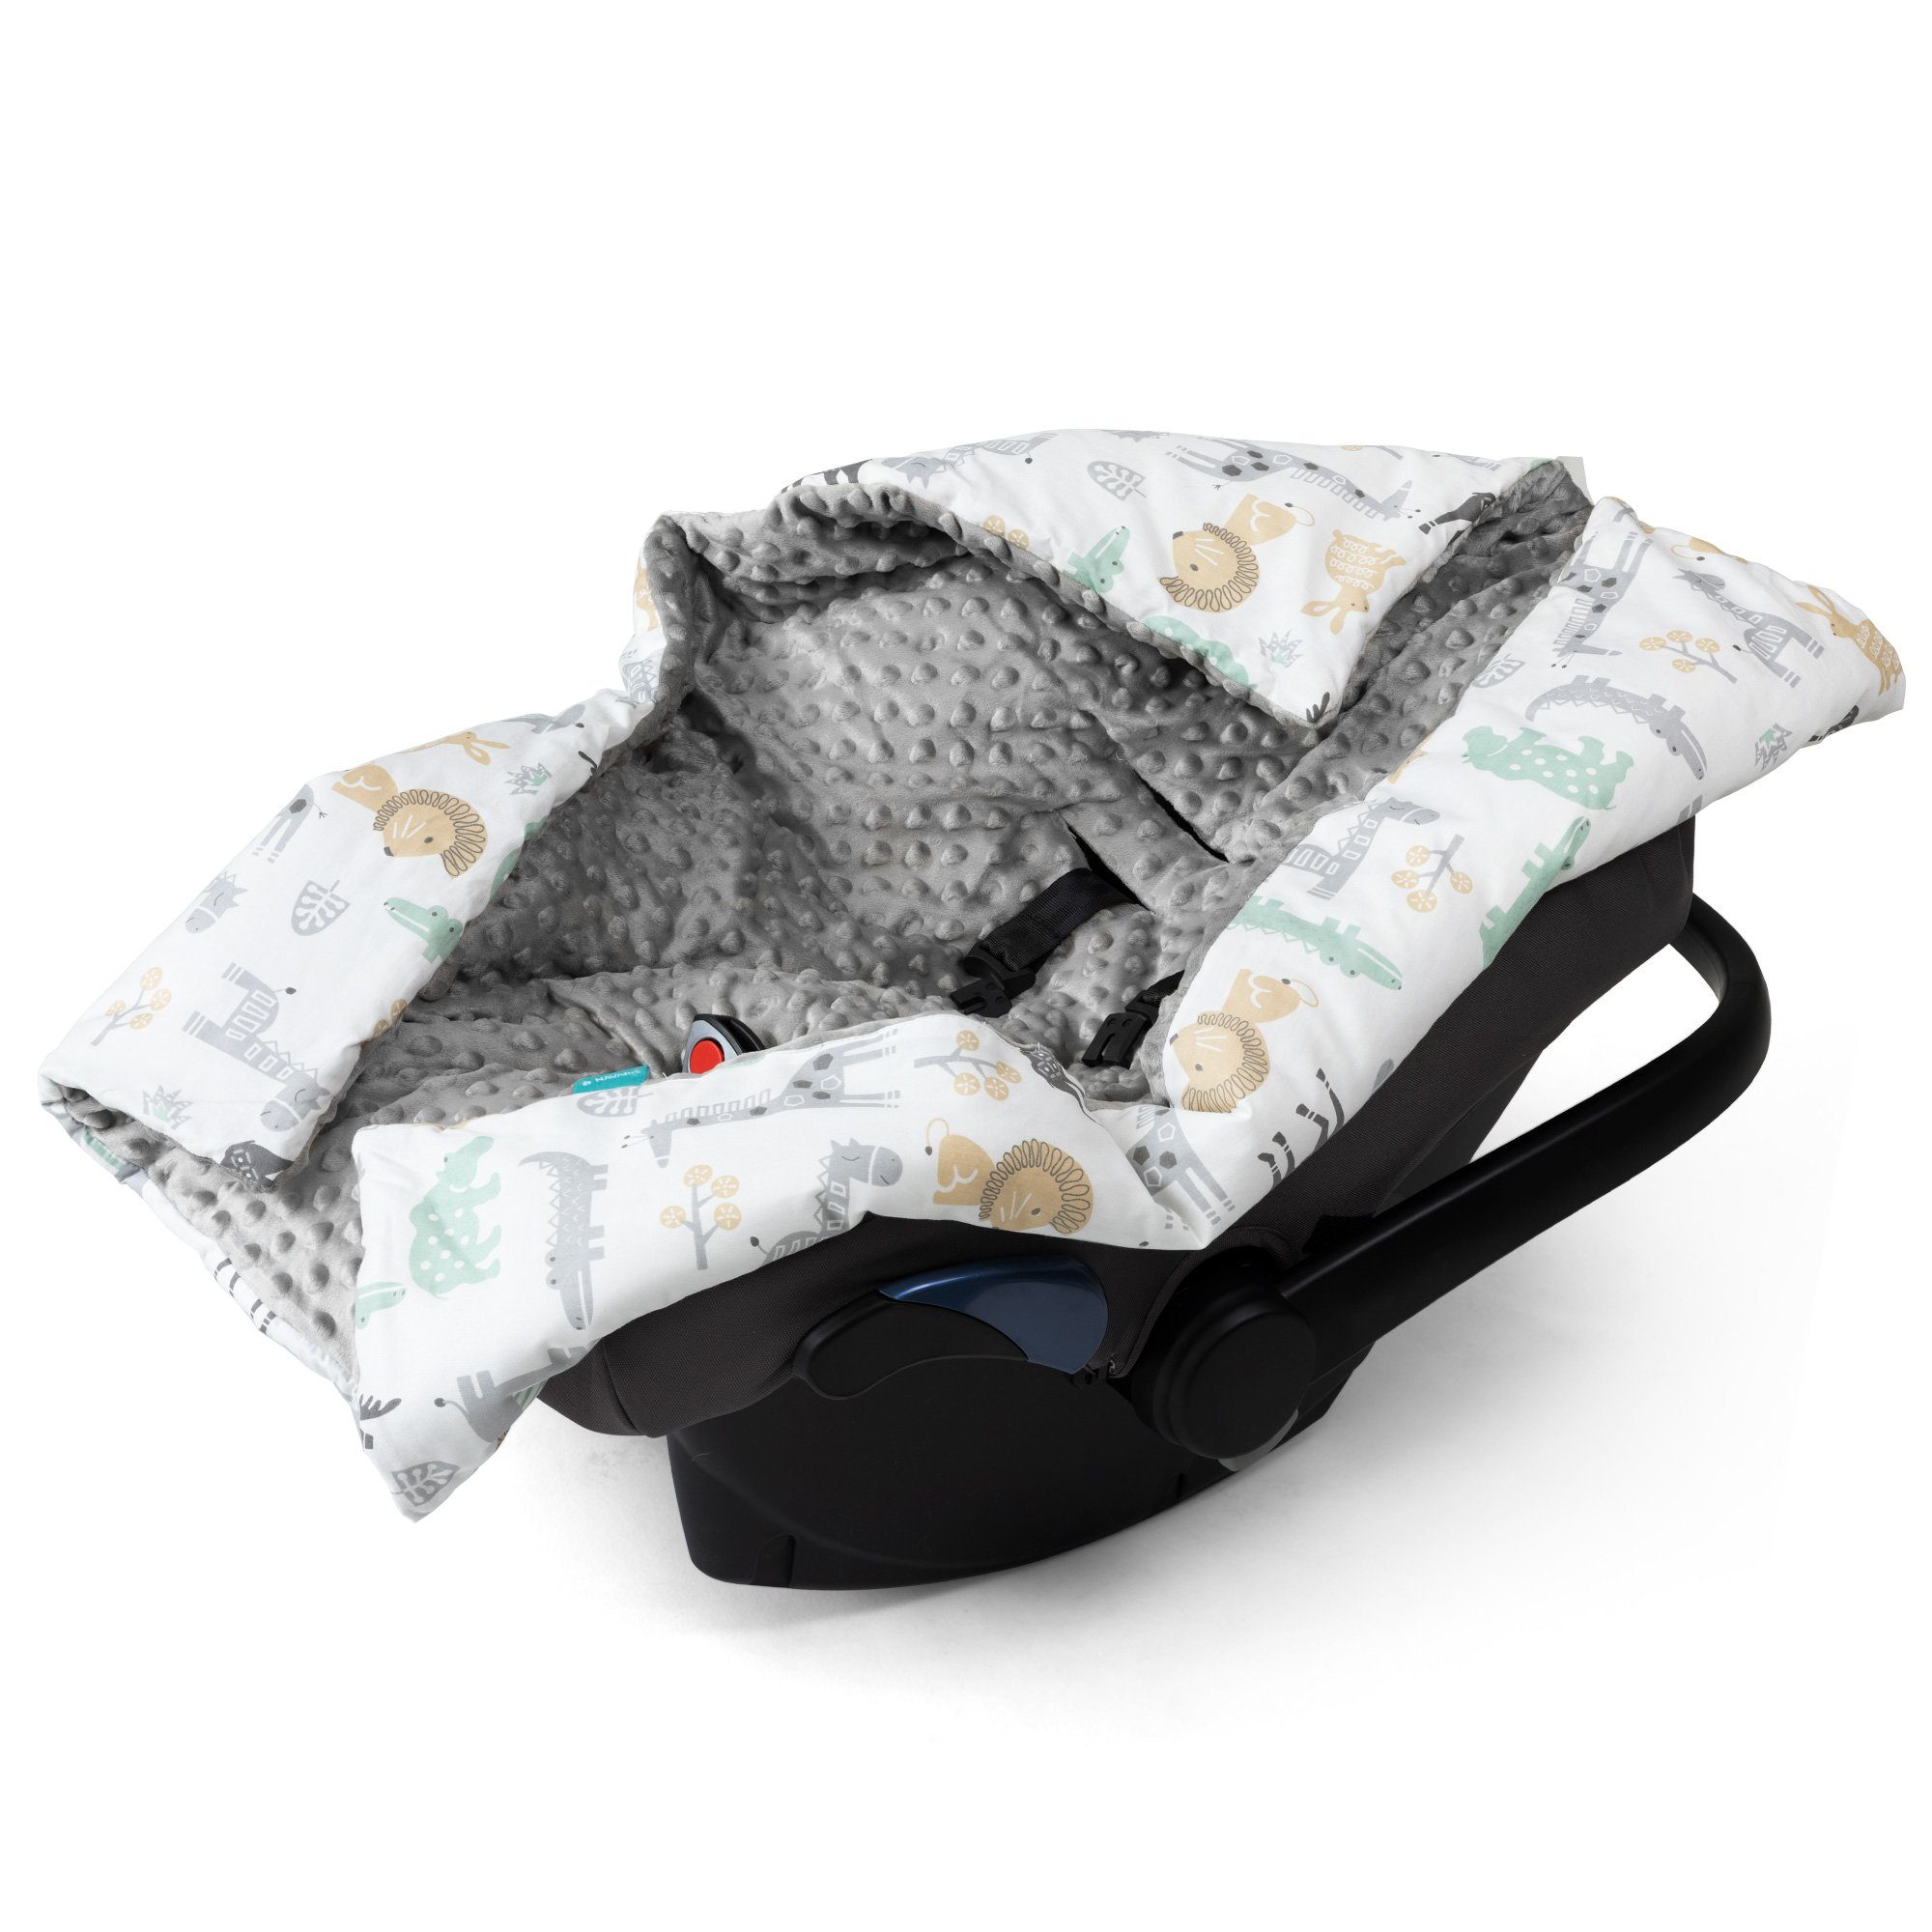 Einschlagdecke Decke universal - Design, - Fußsack - Babyschale für Navaris Tierwelt